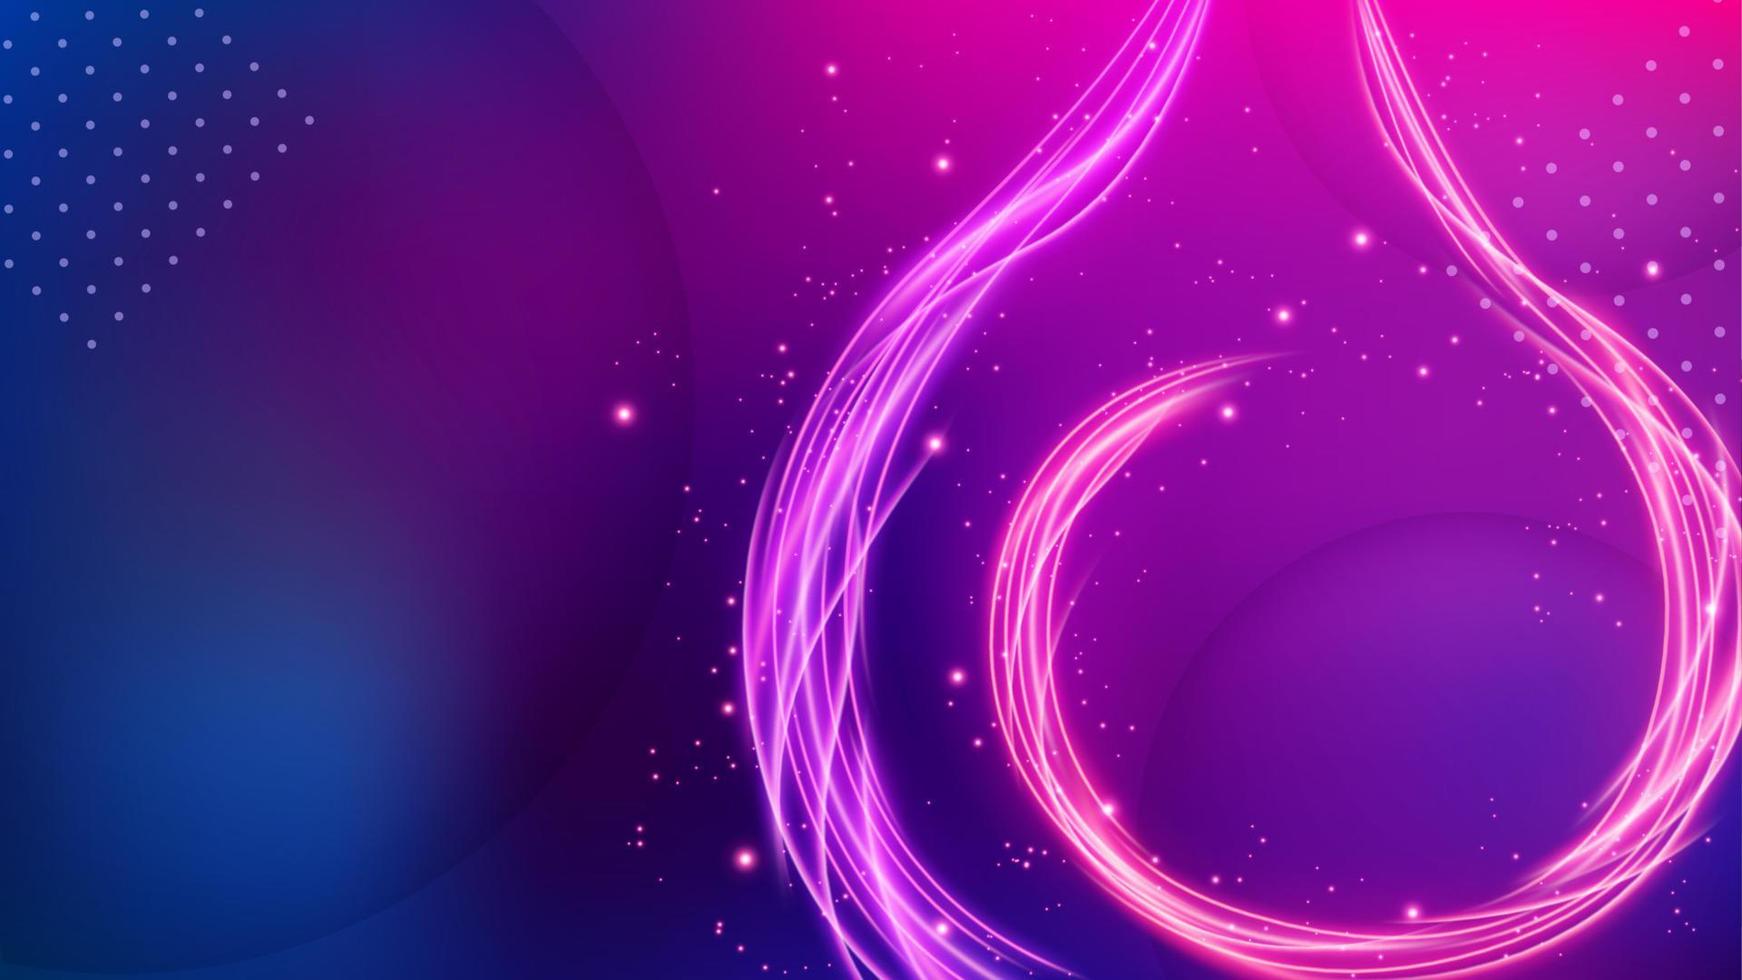 Feuerlinien Hintergrund, elegante violette Linie. Breitbild-Vektor-Illustration vektor